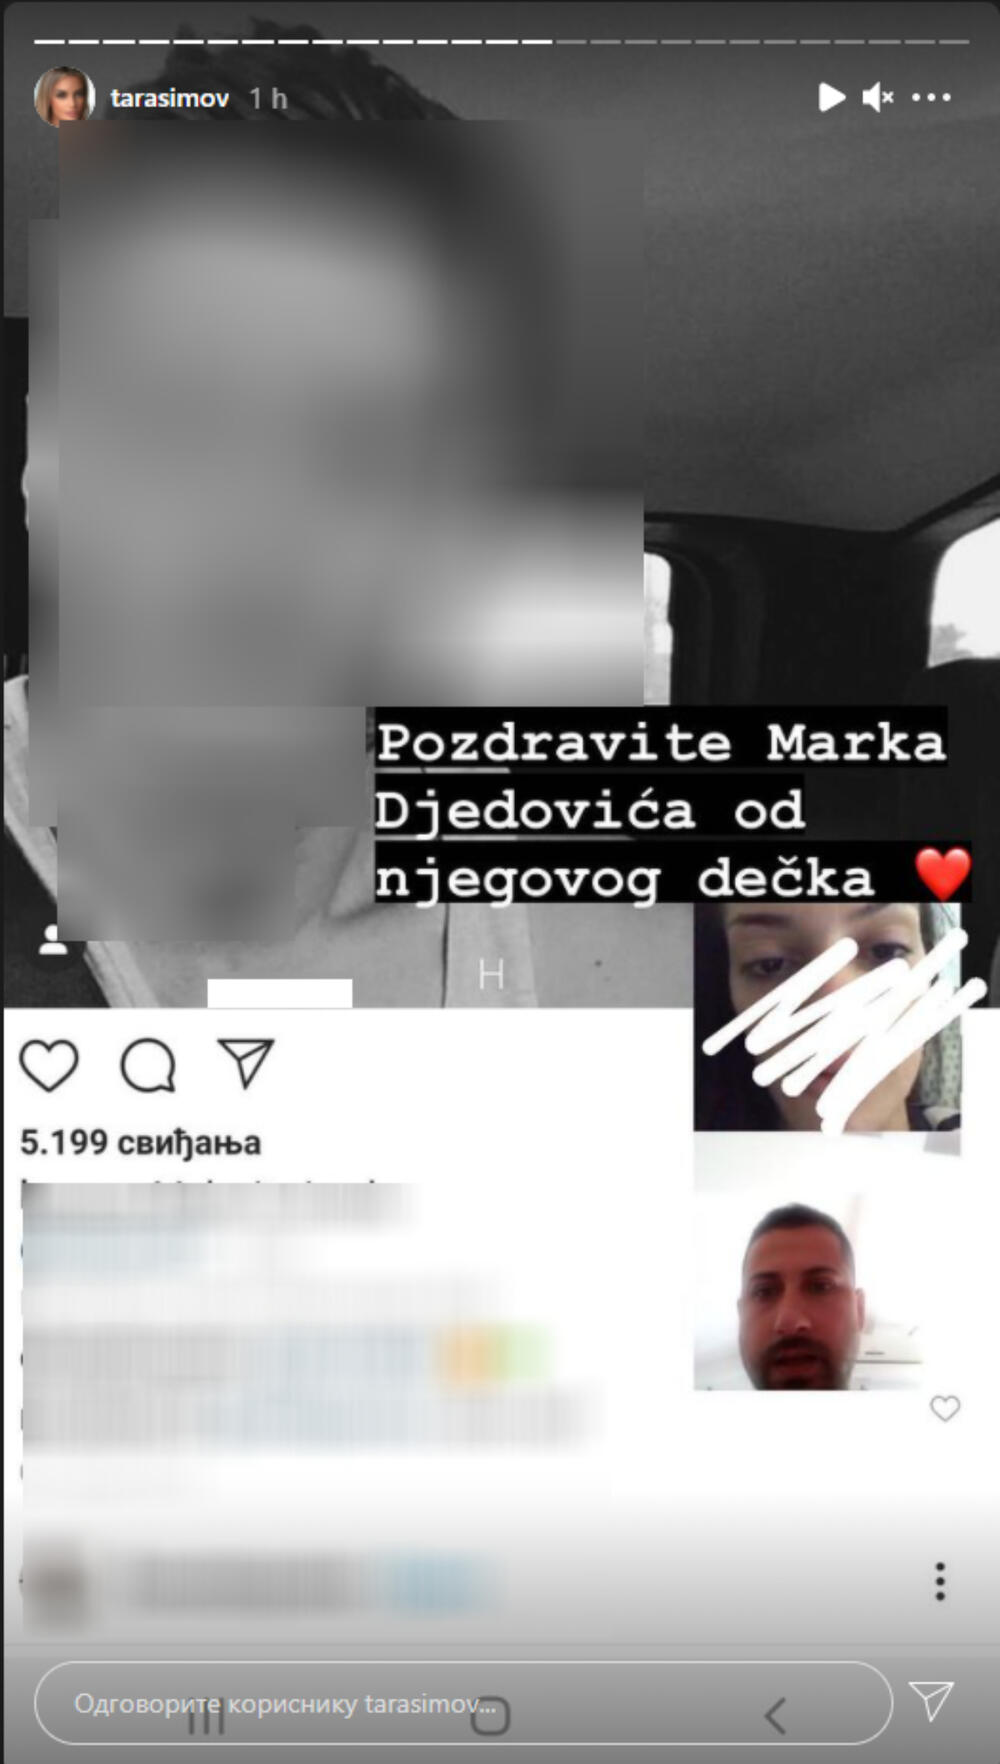 Naime, Simova se oglasila na svom Instagram profilu i objavila je fotografiju dečka koji nije poznat javnosti, a kako ona navodi to je navodno dečko Marka Đedovića. Ona je takođe objavila i privatnu prepisku između nje i Đedovića, kao i fotografije koje joj je navodno slao Marko.    "Pozdrav za Marka Đedovića od njegovog dečka", napisala je Tara.